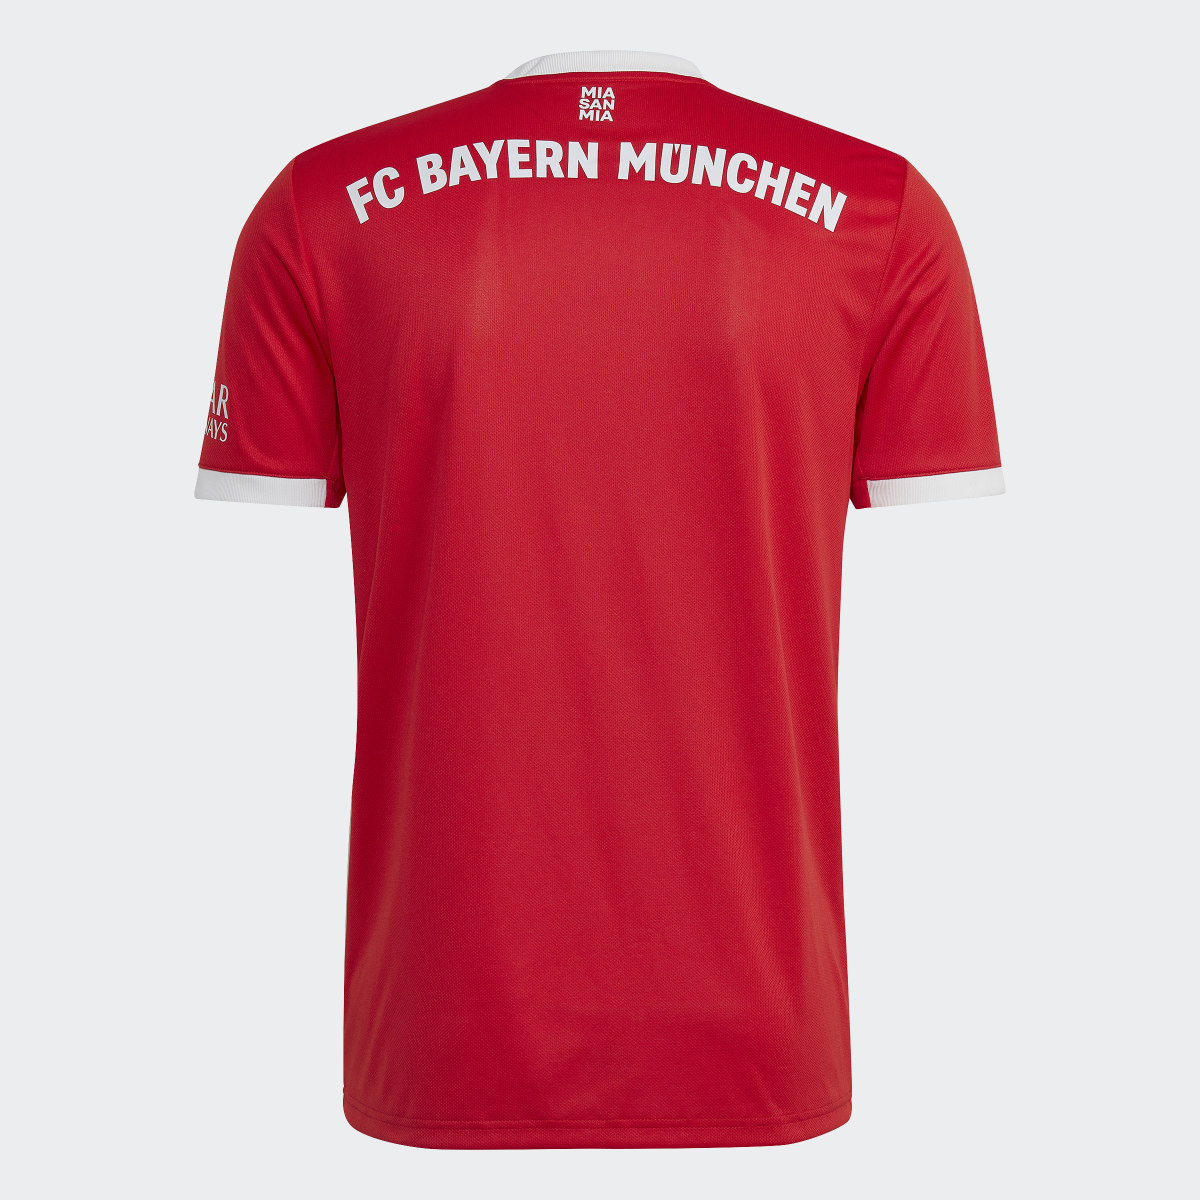 Adidas Camisola Principal 22/23 do FC Bayern München. 5